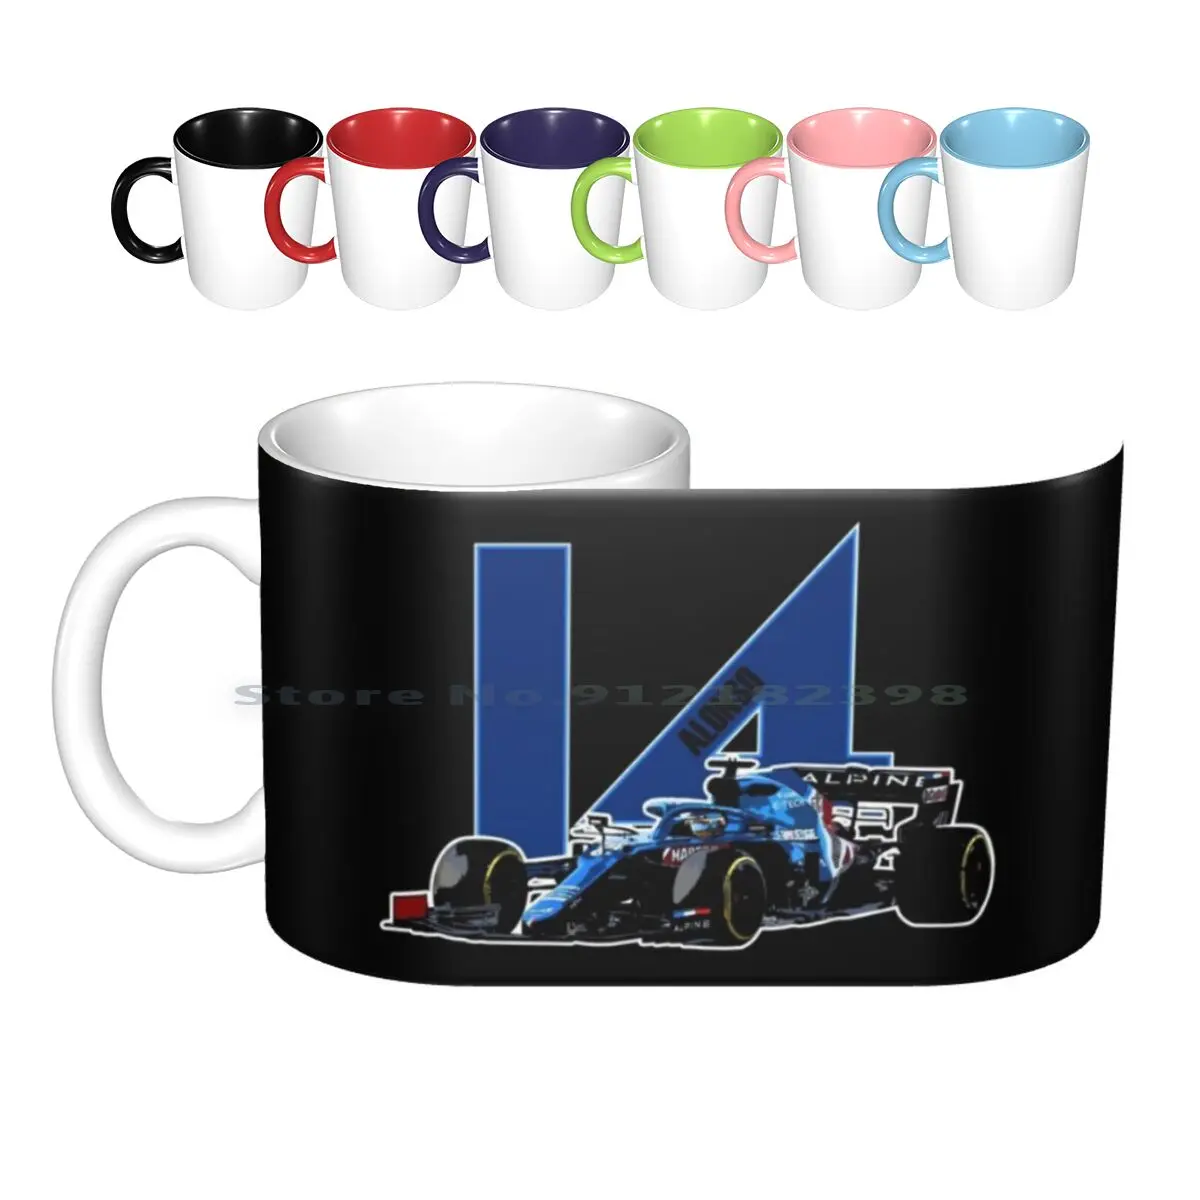 

Керамические кружки Alonso 14 A521, кофейные чашки, кружка для молока и чая, Горный мотоцикл, гоночный чай Гран-при, спортивный мотор, гоночный Ферн...